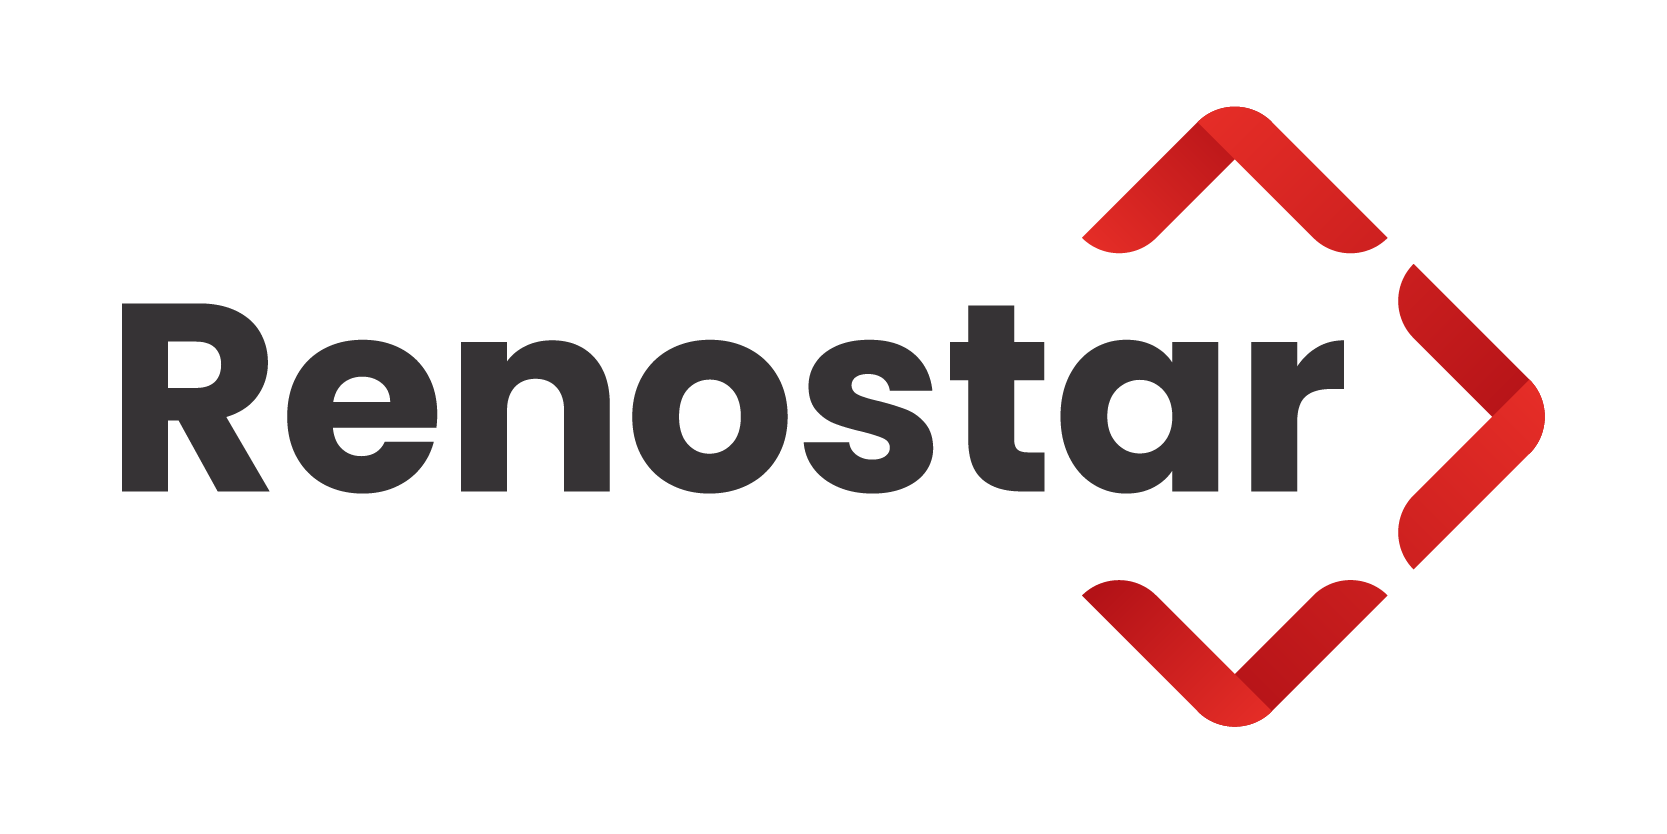 Renostar_Legal Tech_Logo Standard_800x400px